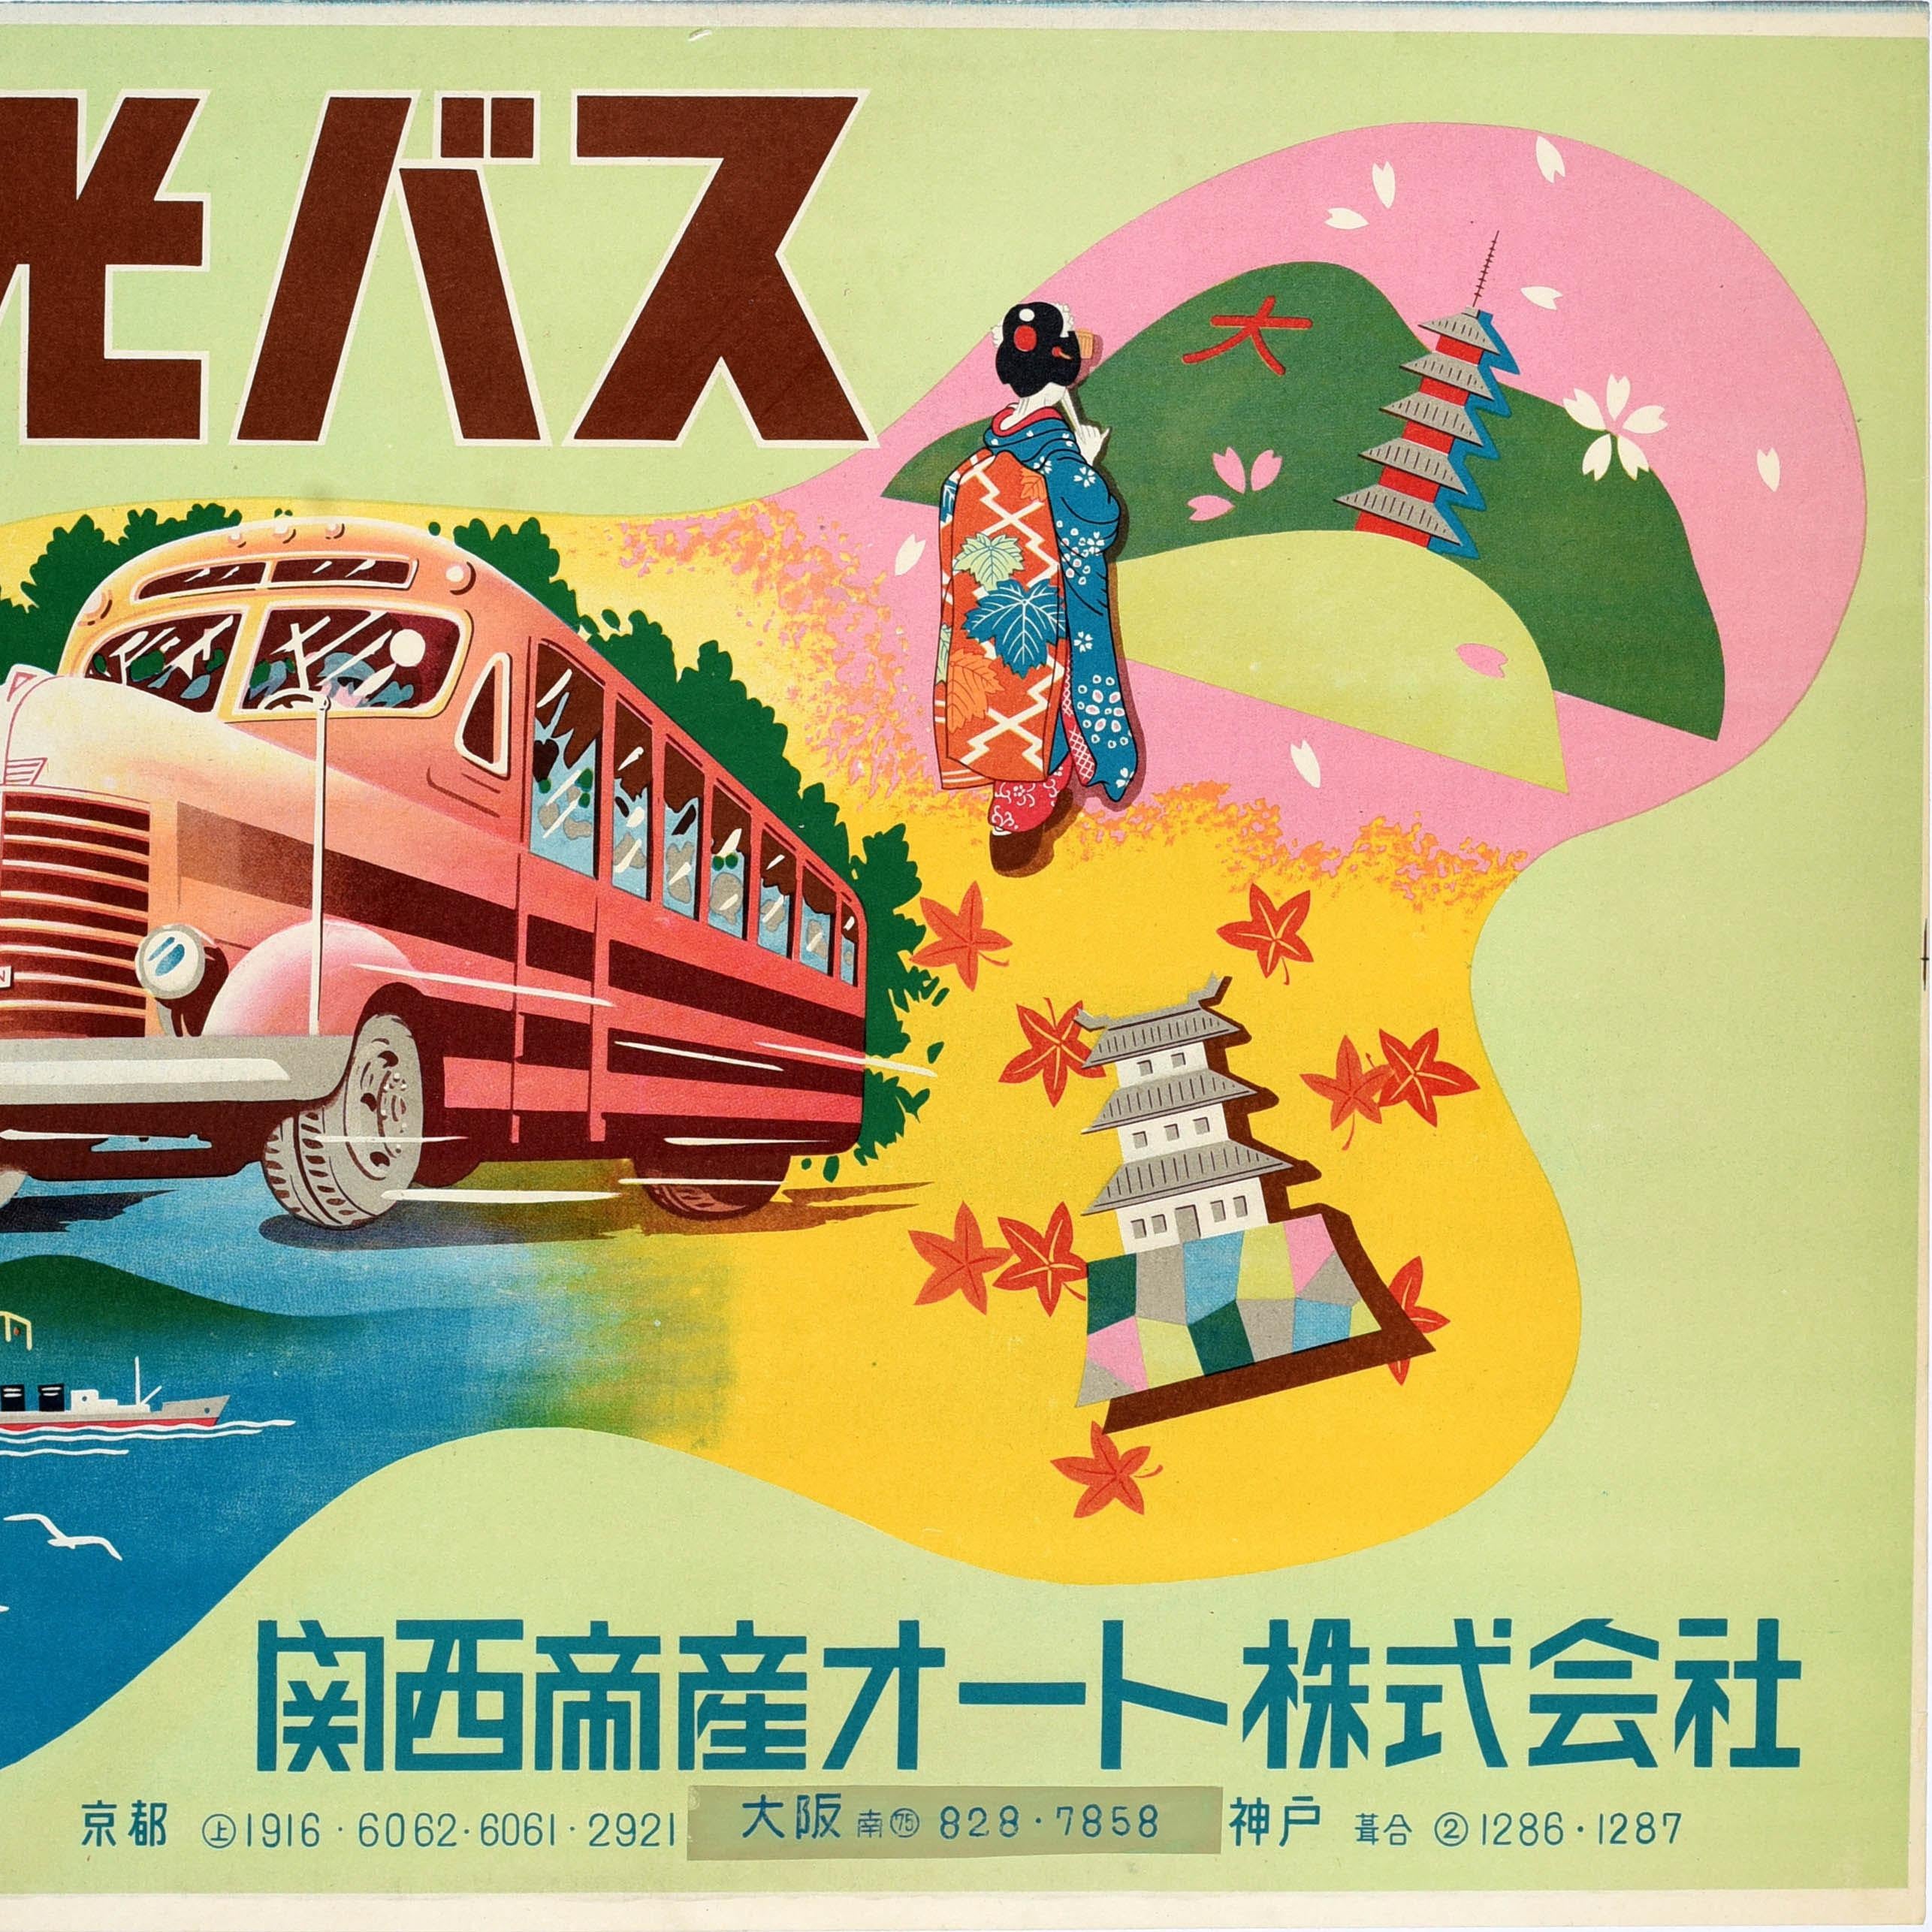 Original Vintage-Reiseplakat für Sightseeing-Busreisen in Japan, herausgegeben von Kansai Teisan Auto Co Ltd., mit einem farbenfrohen Motiv, das einen Reisebus zeigt, der durch eine Collage japanischer Landschaften fährt, darunter Schiffe, die auf